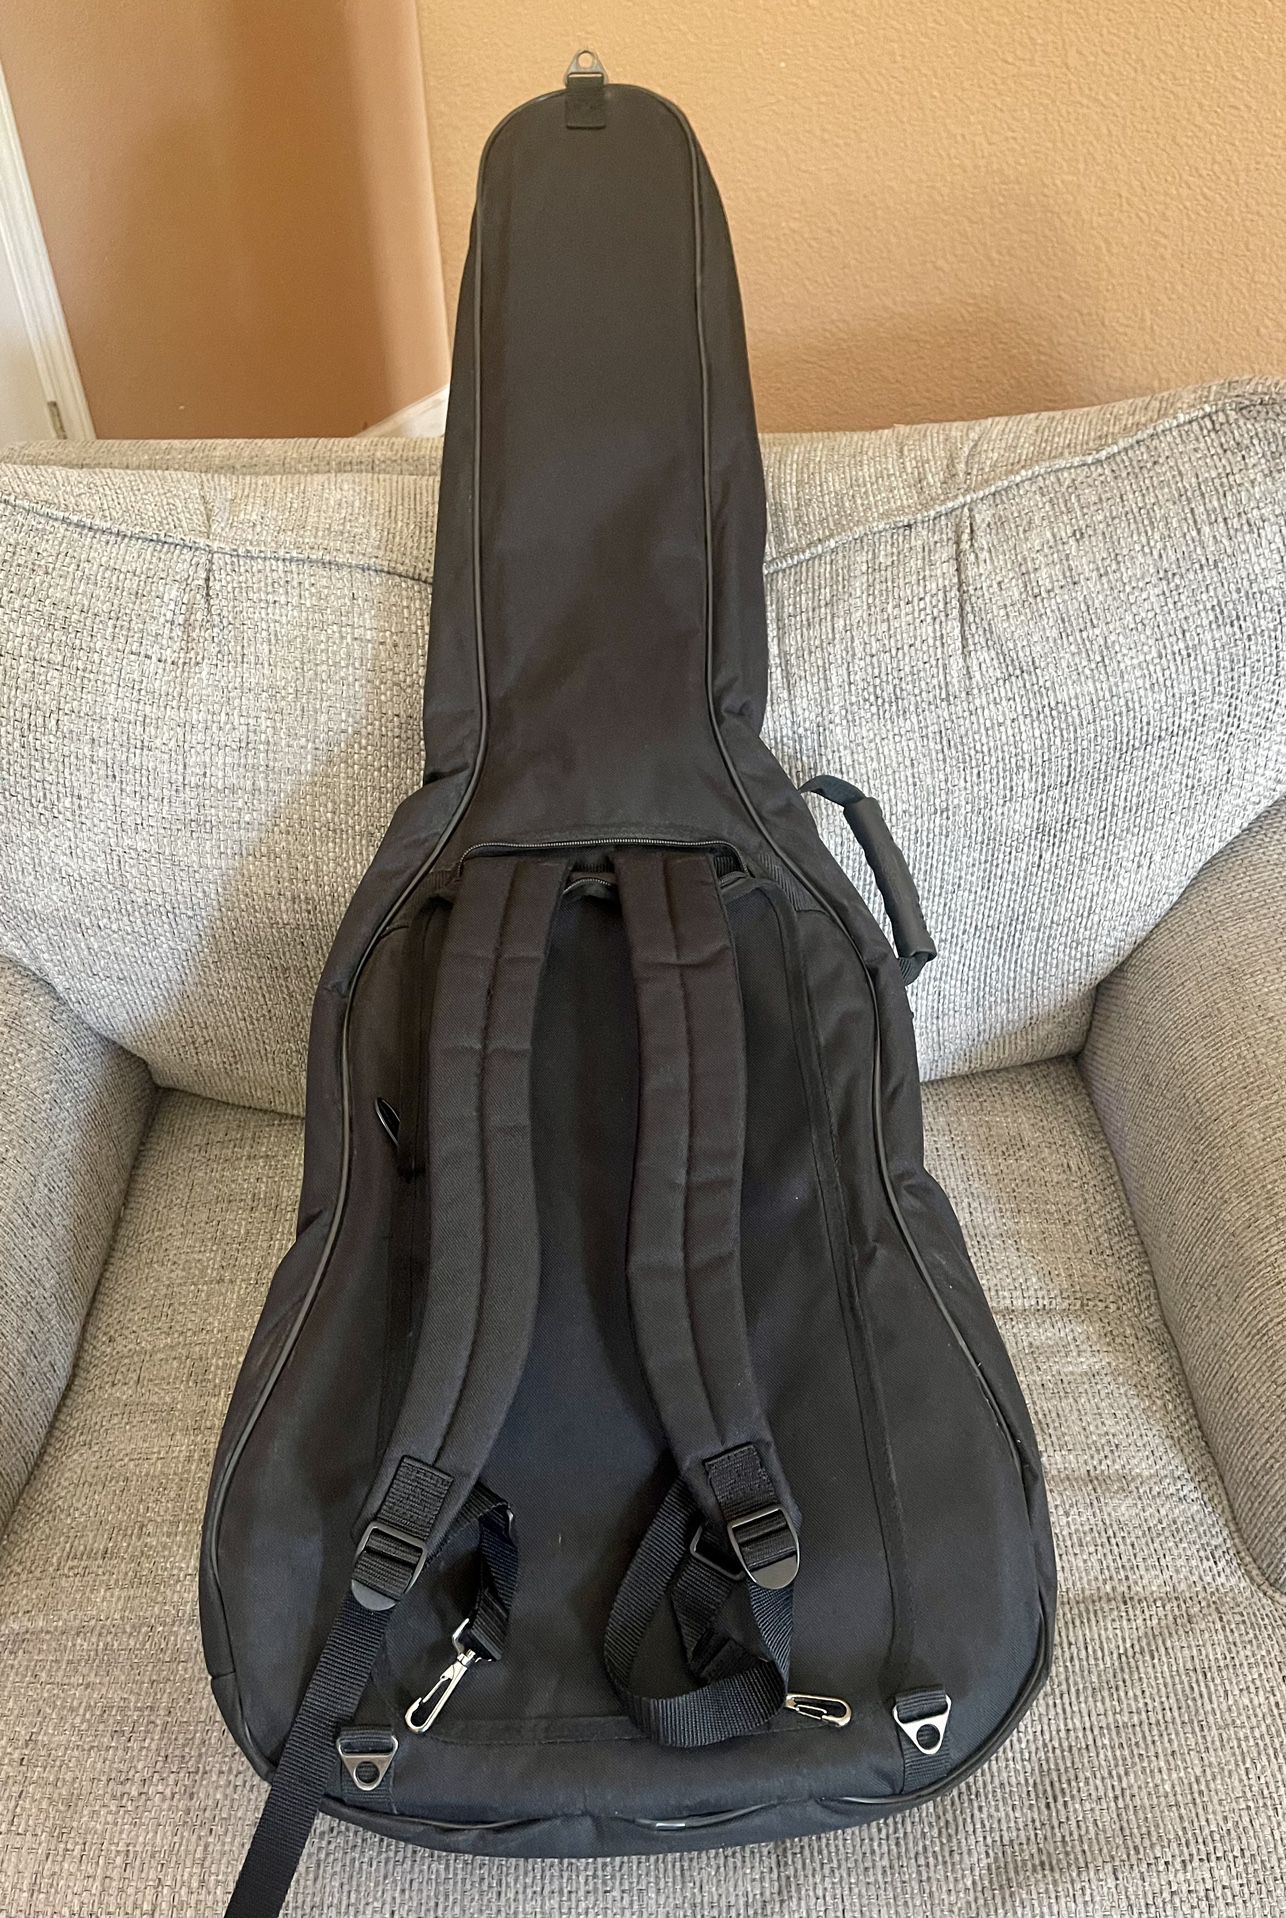 Road Runner Padded Electric Guitar Case Gig Bag Backpack Black/Red